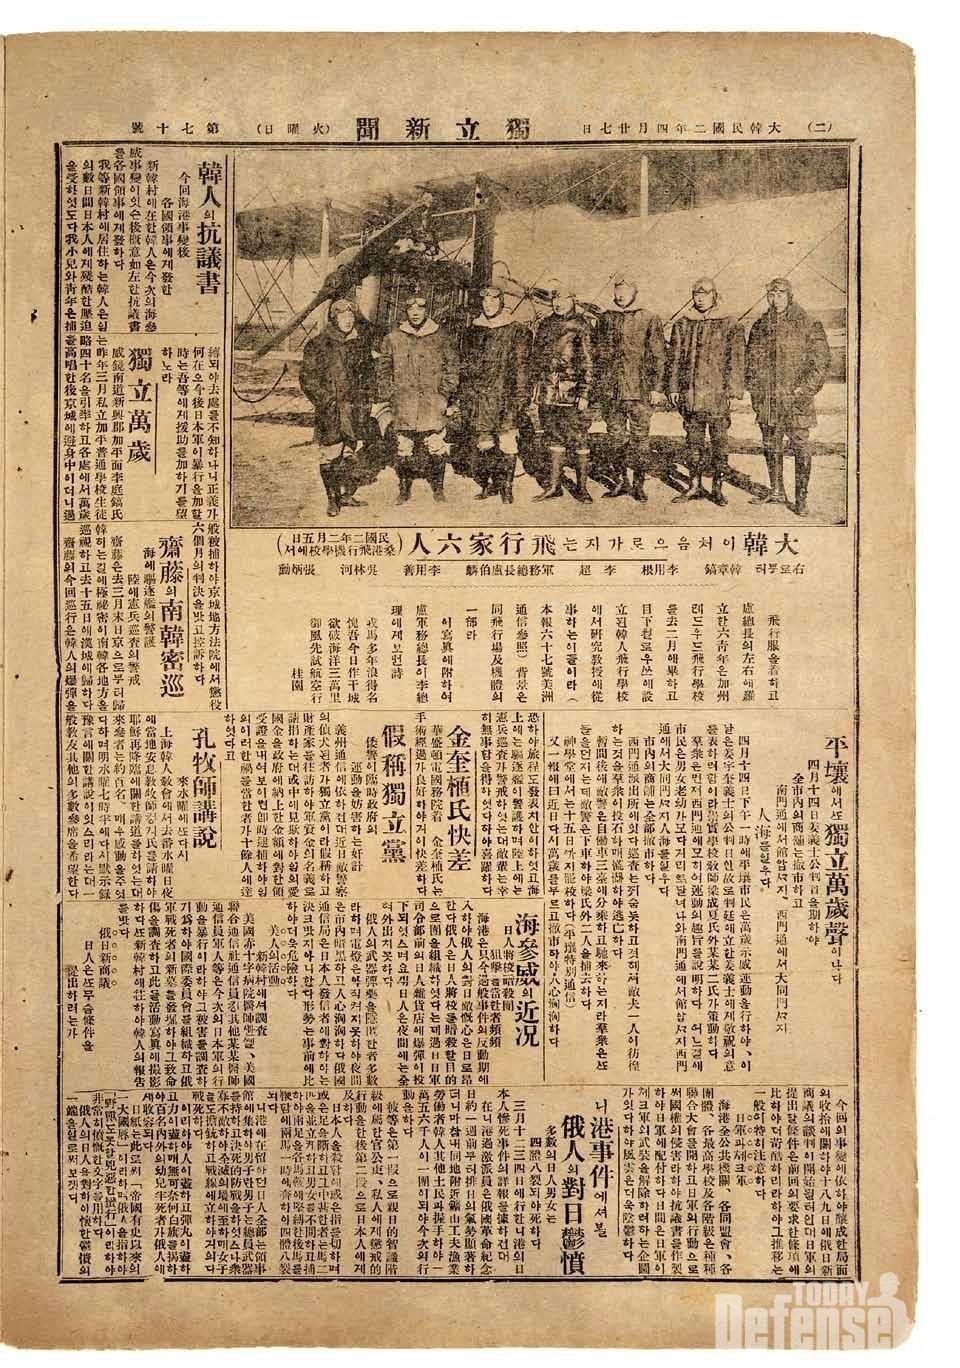 1. 미국 윌로우스 한인비행학교 소식을 담은 독립신문(1920) (사진: 공군)